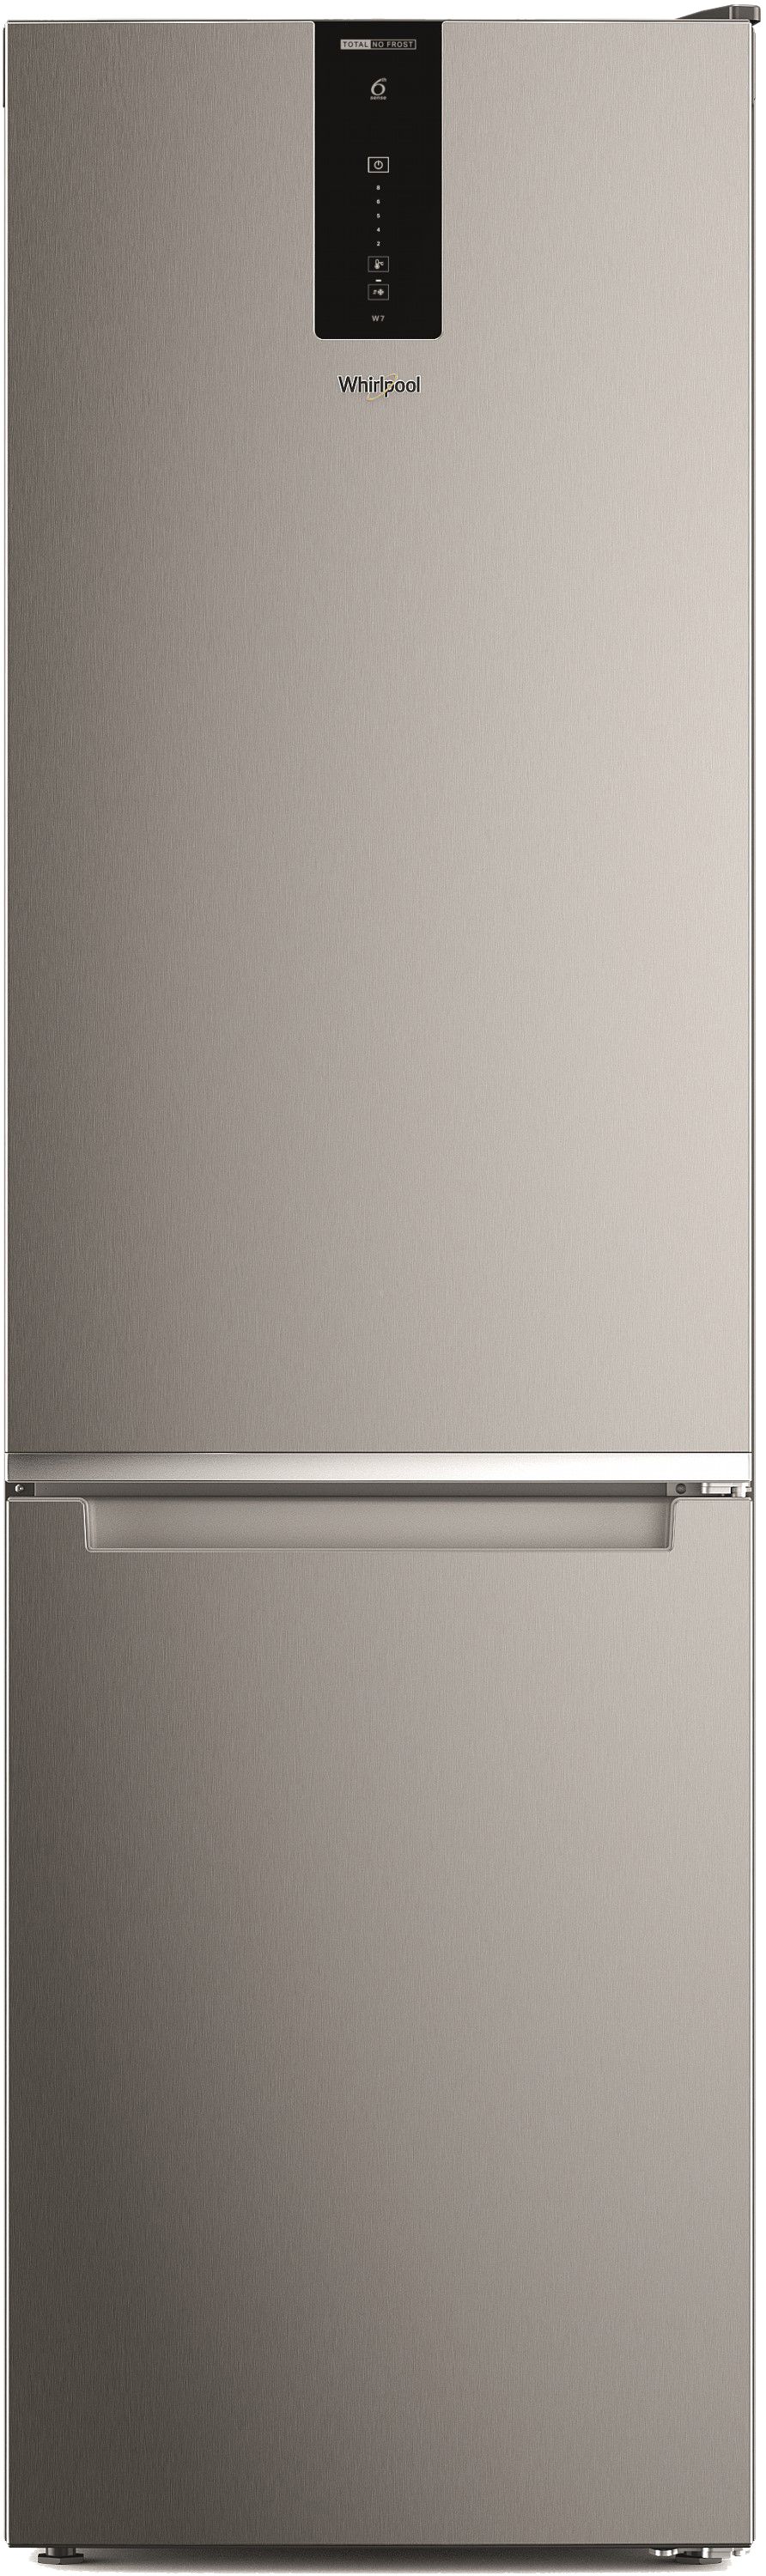 Двокамерний холодильник Whirlpool W7X 92O OX UA